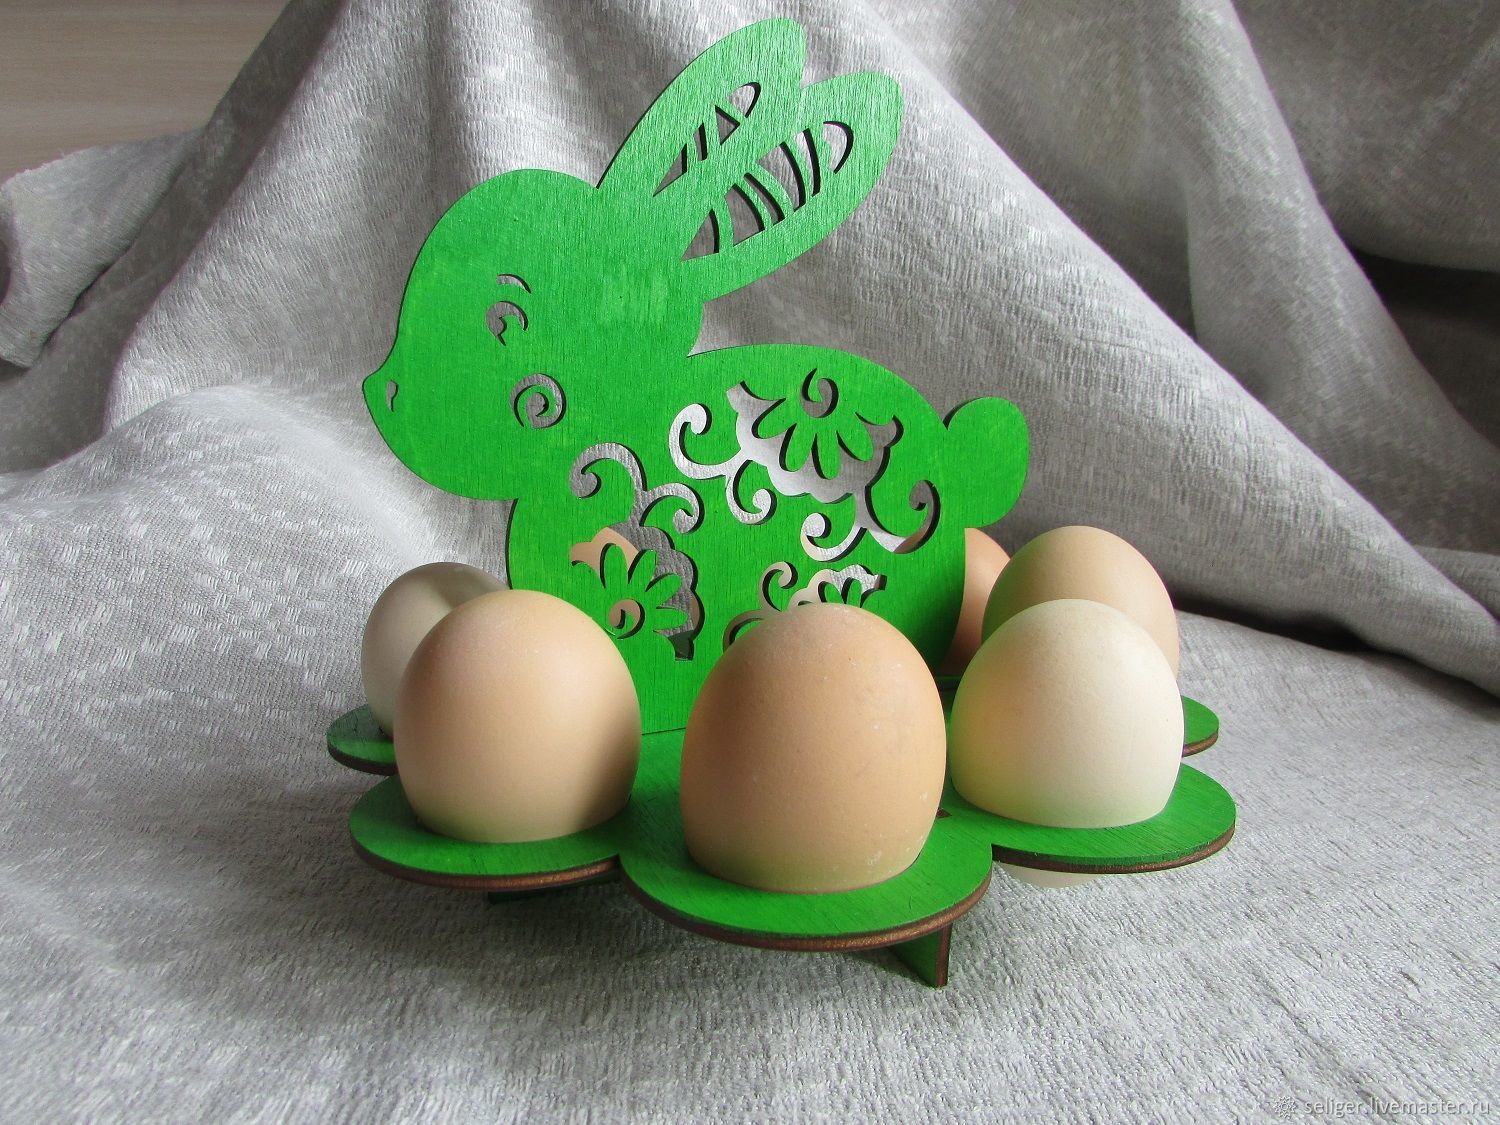 фото пасхального яйца на подставке